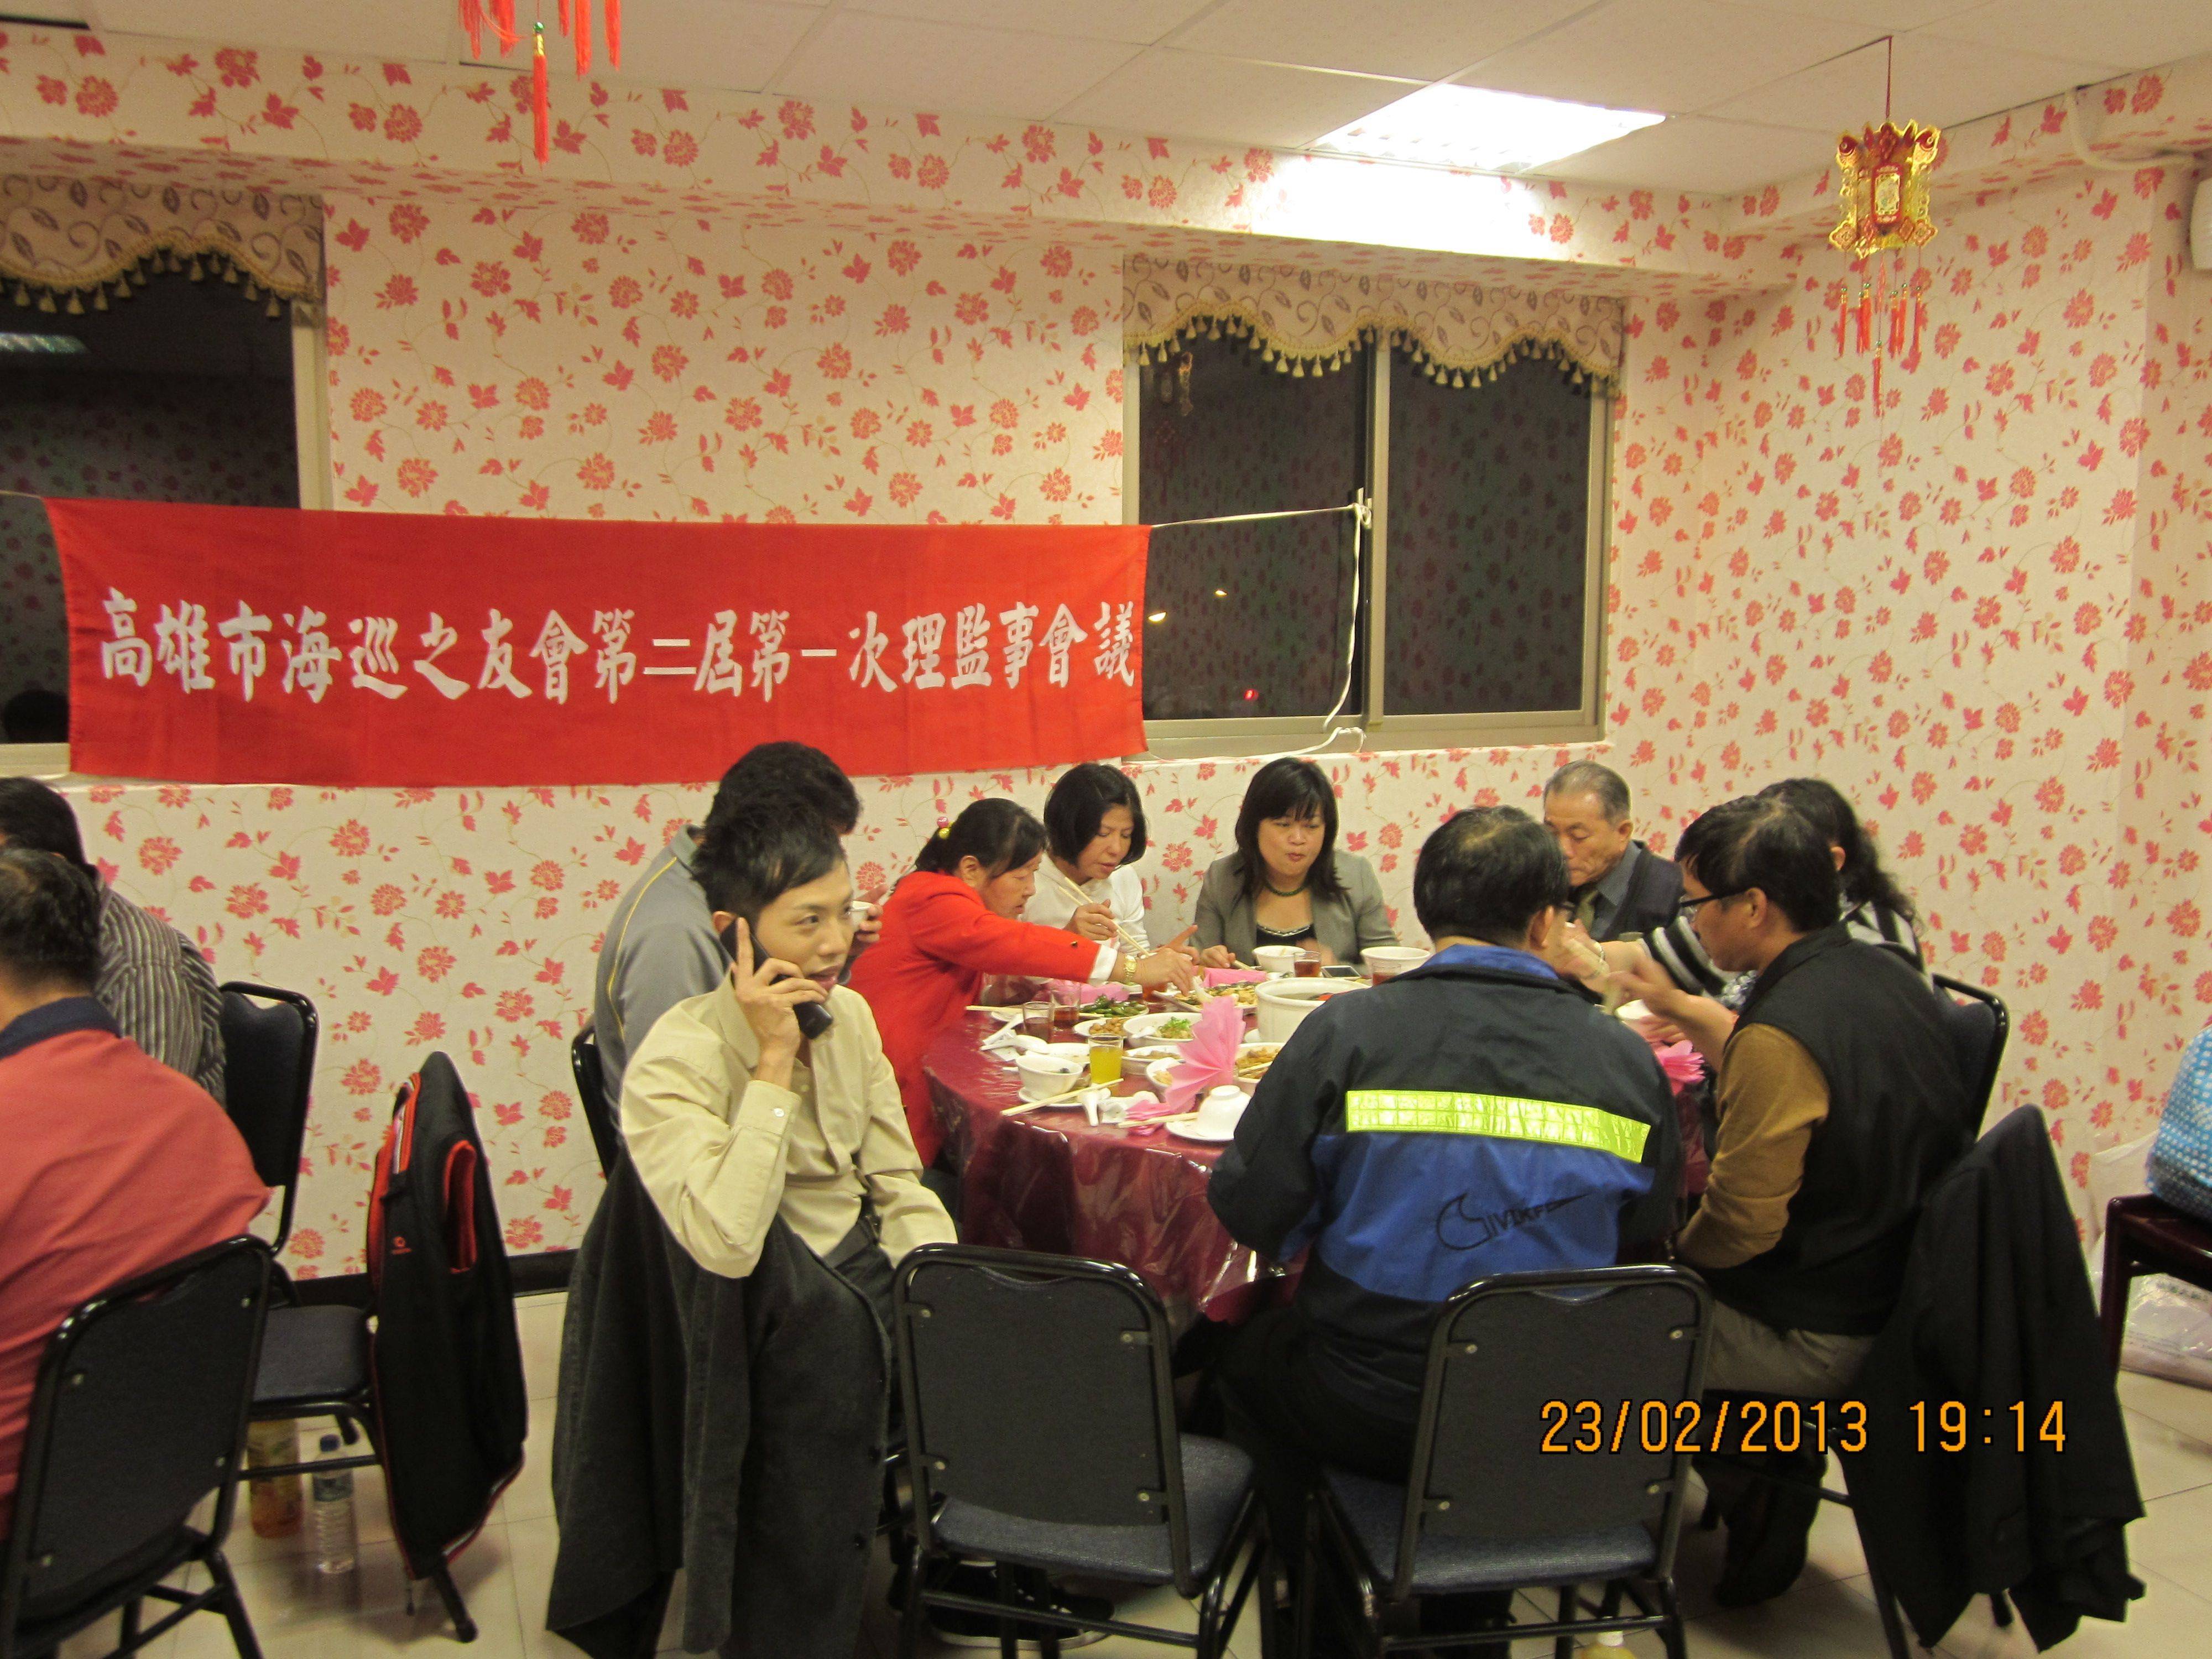 高雄市海巡之友會春節聚餐及光華國小教學研討會 